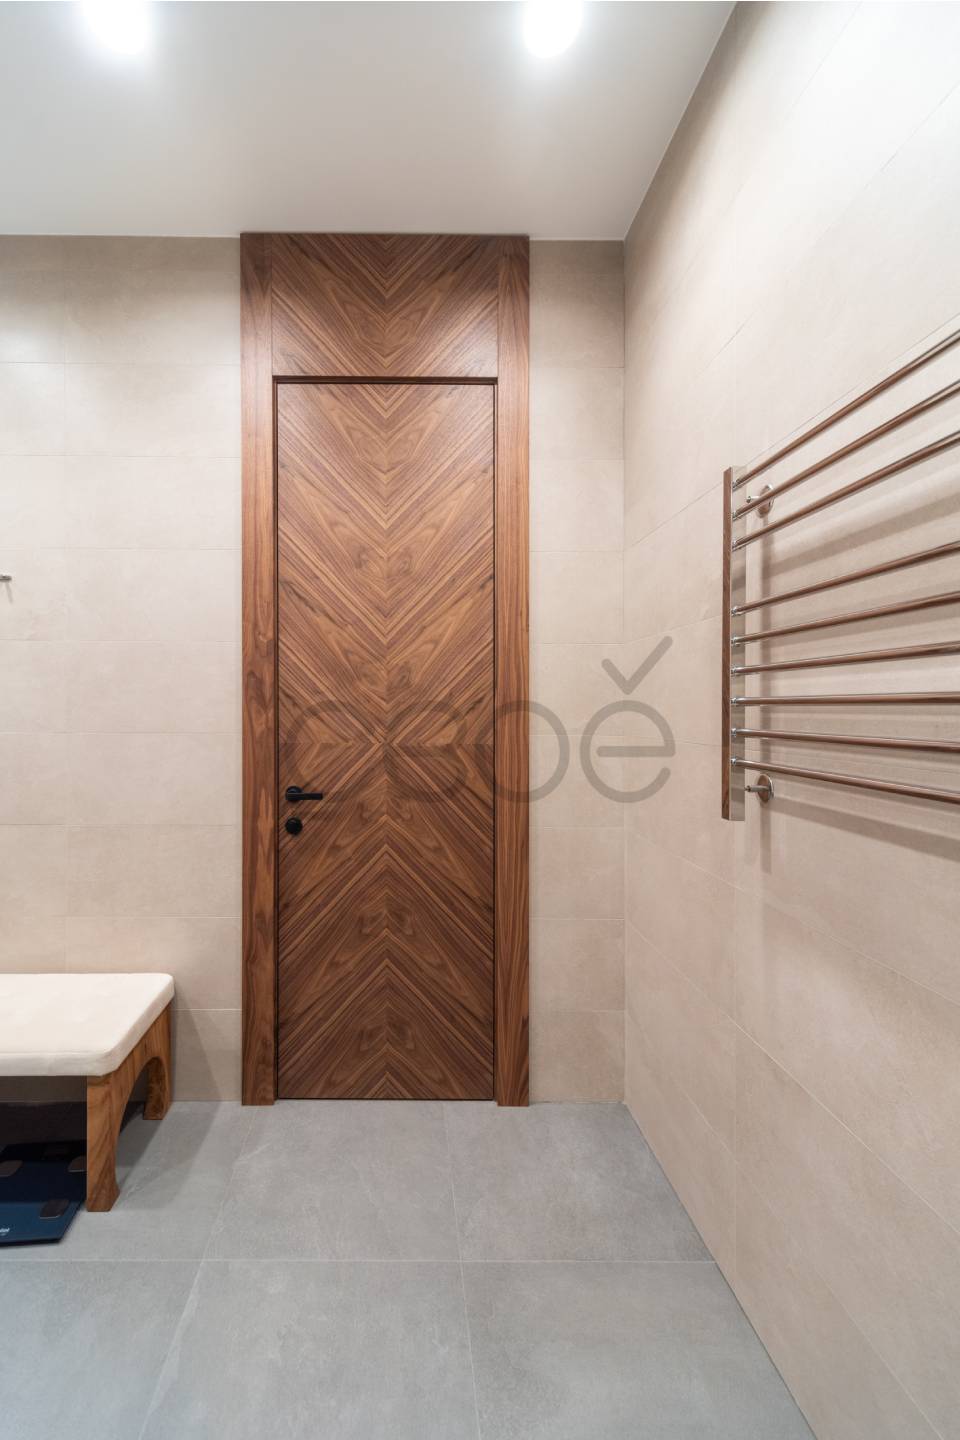 Добротные и стильные двери «Невада» в окружении современного интерьера